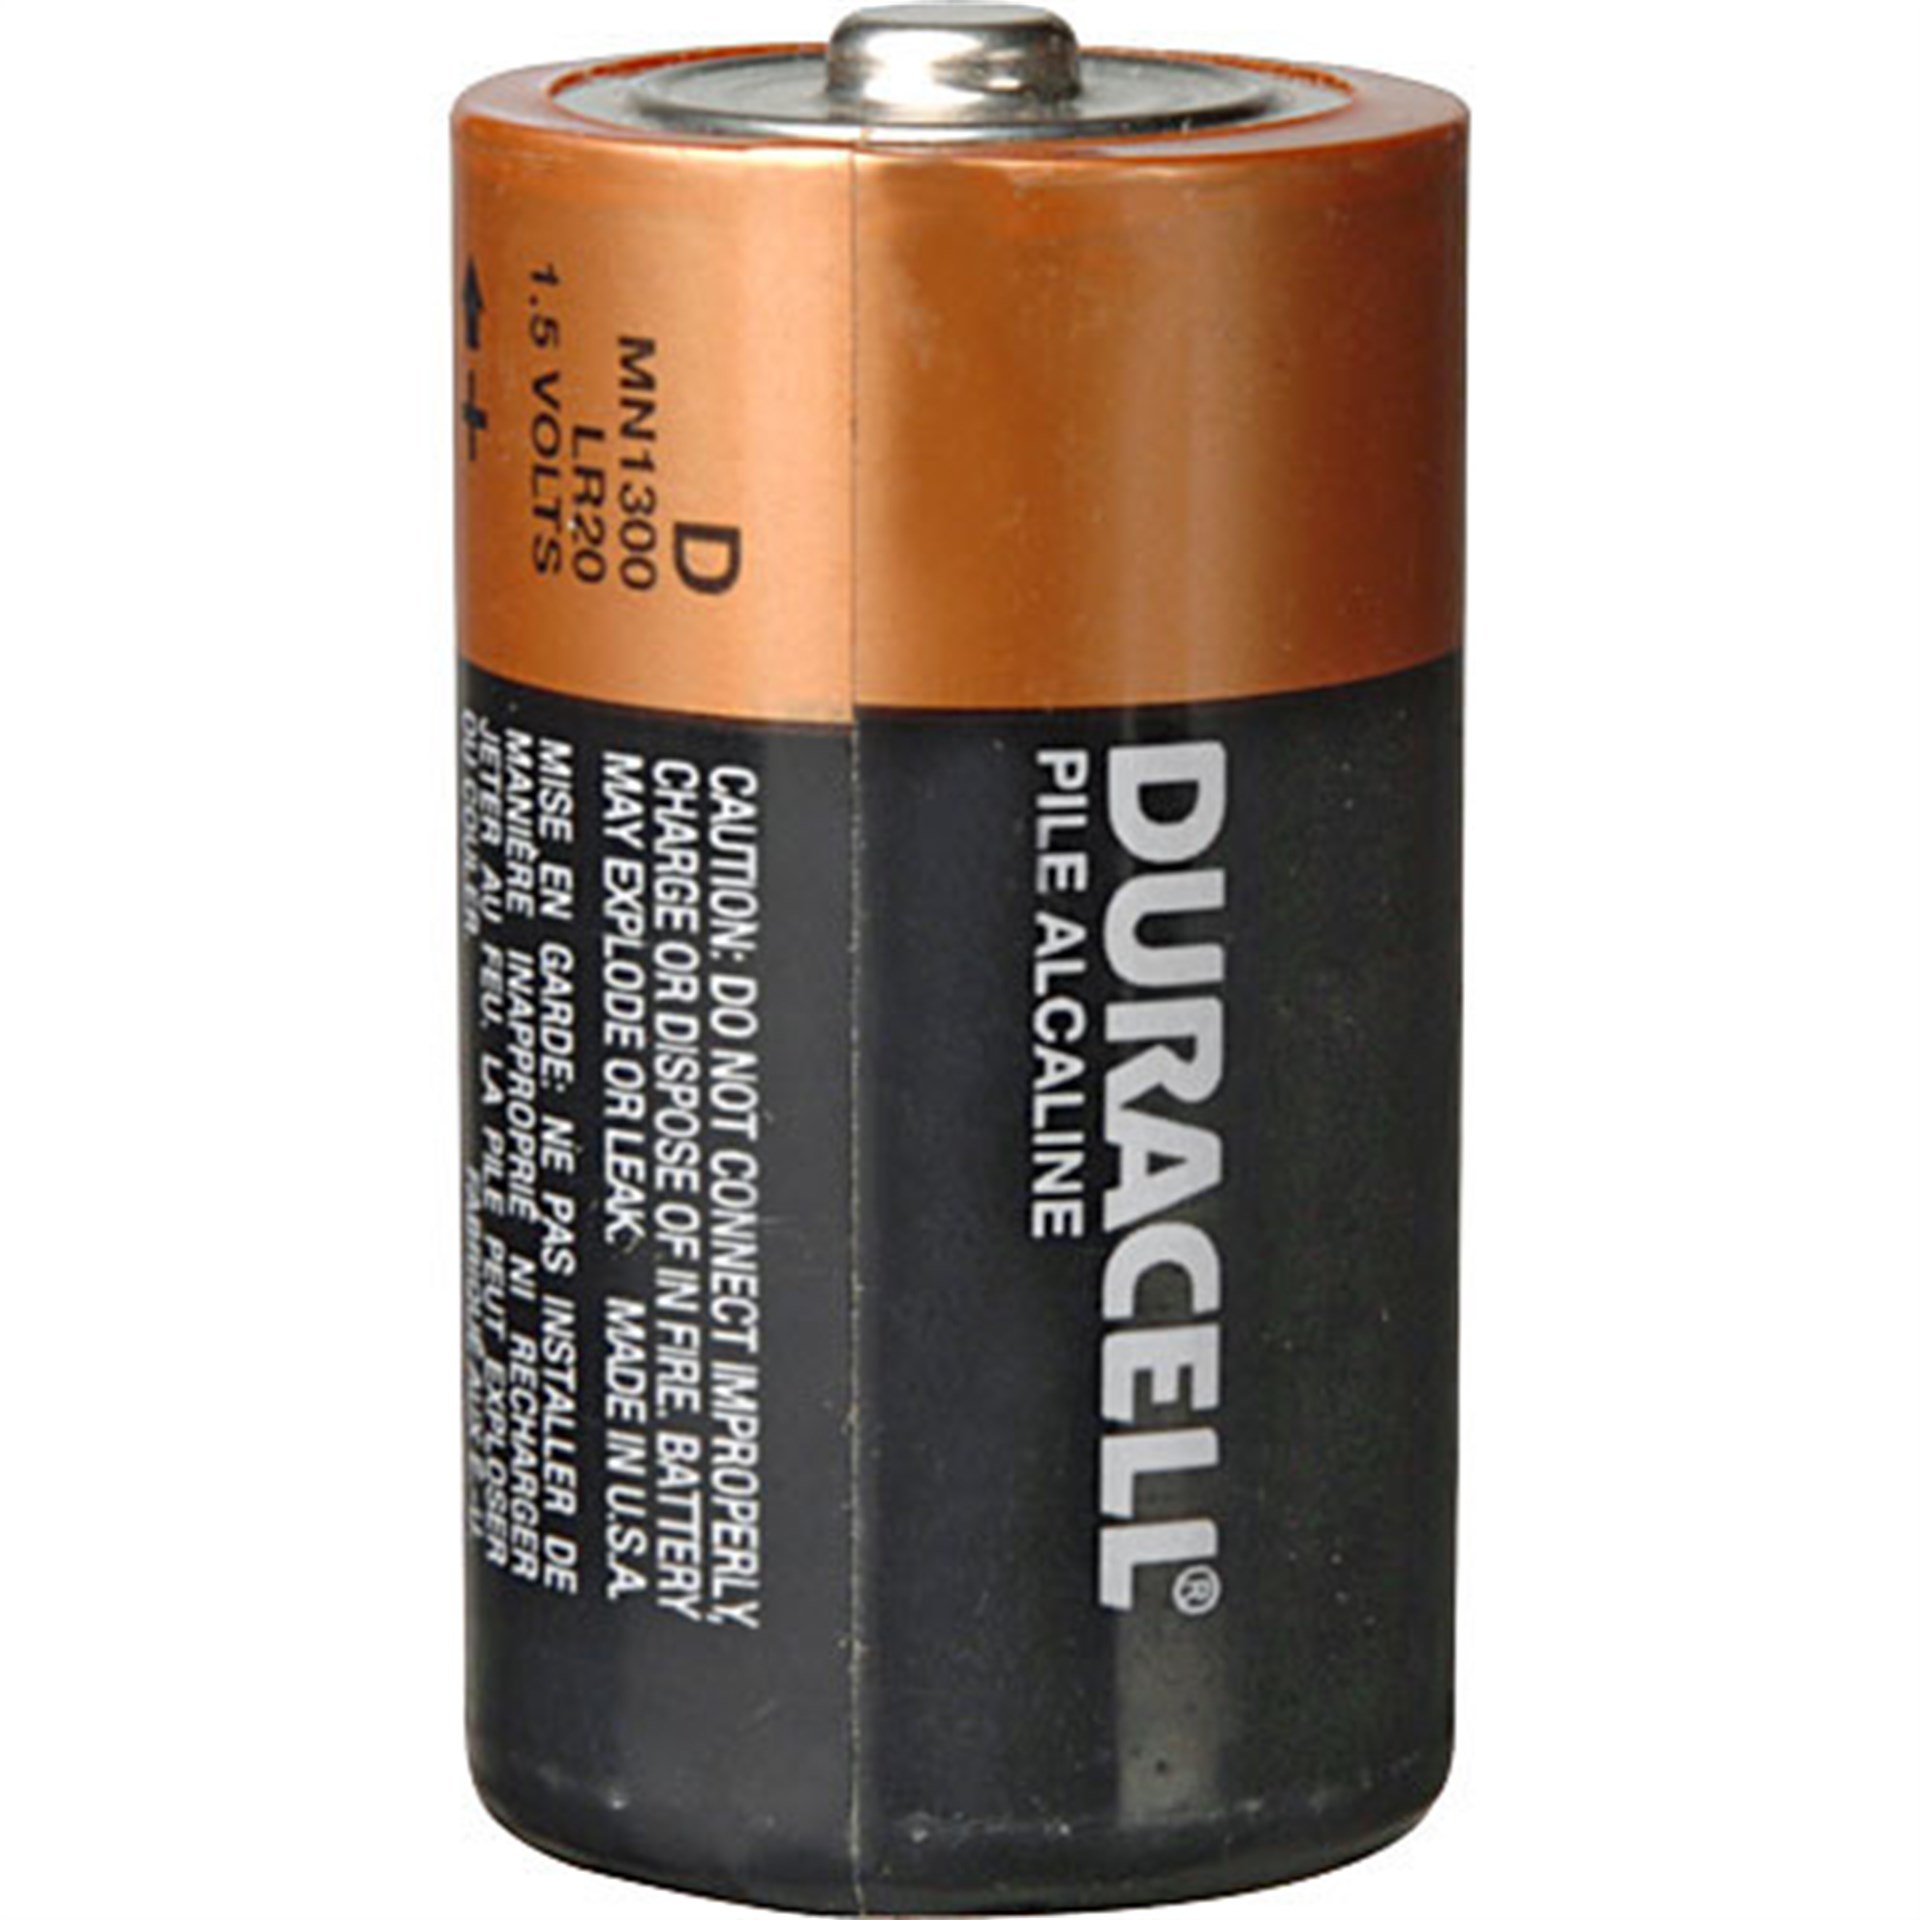 D batteries. Батарейки Duracell d/LR 20. Батарейка Duracell lr20. Батарейки Дюрасел lr20. Батарейка lr20 d 1,5 в.